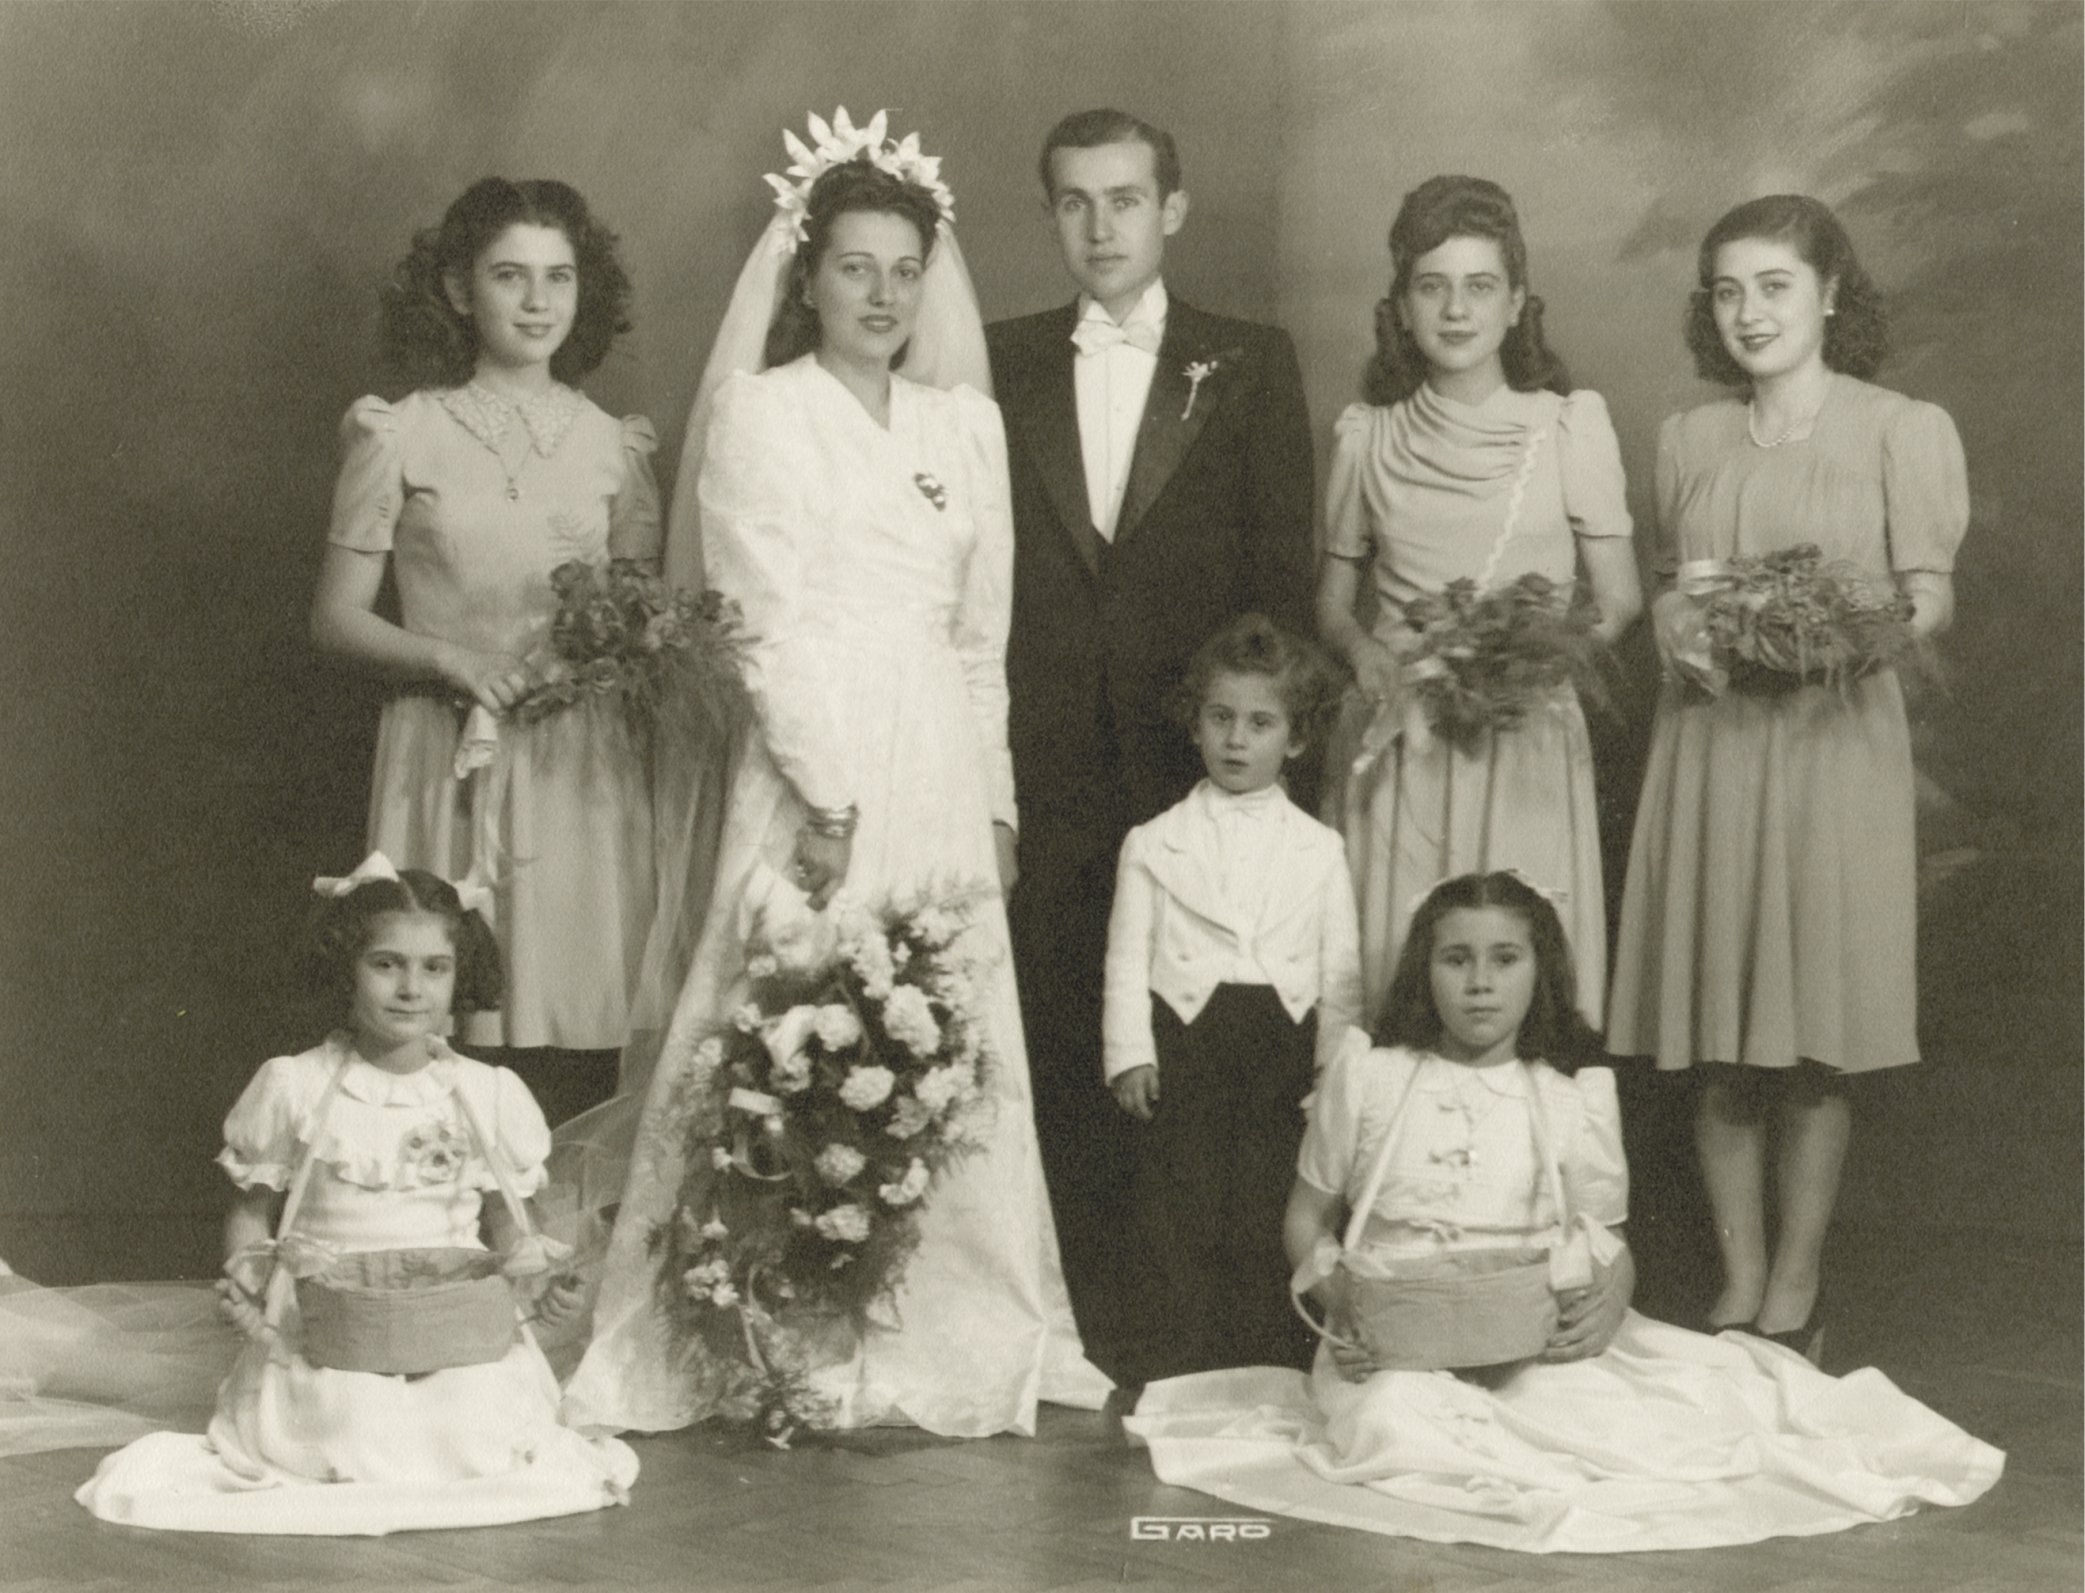 Փեսան՝ Վրէժ Մալխասեան (Հրանոյշ Պալըգճեանի որդին), հարսը՝ Ագապի Պօհճալեան (Արշակուհի Պալըգճեանի դուստրը), հարսնաքոյրեր՝ Արմինէ, Ալիս, Անաիս, Նաիրի եւ Սօնա, կենտրոնում՝ Շանթ Թէմիրեան, Կահիրէ, 1942 թ.։